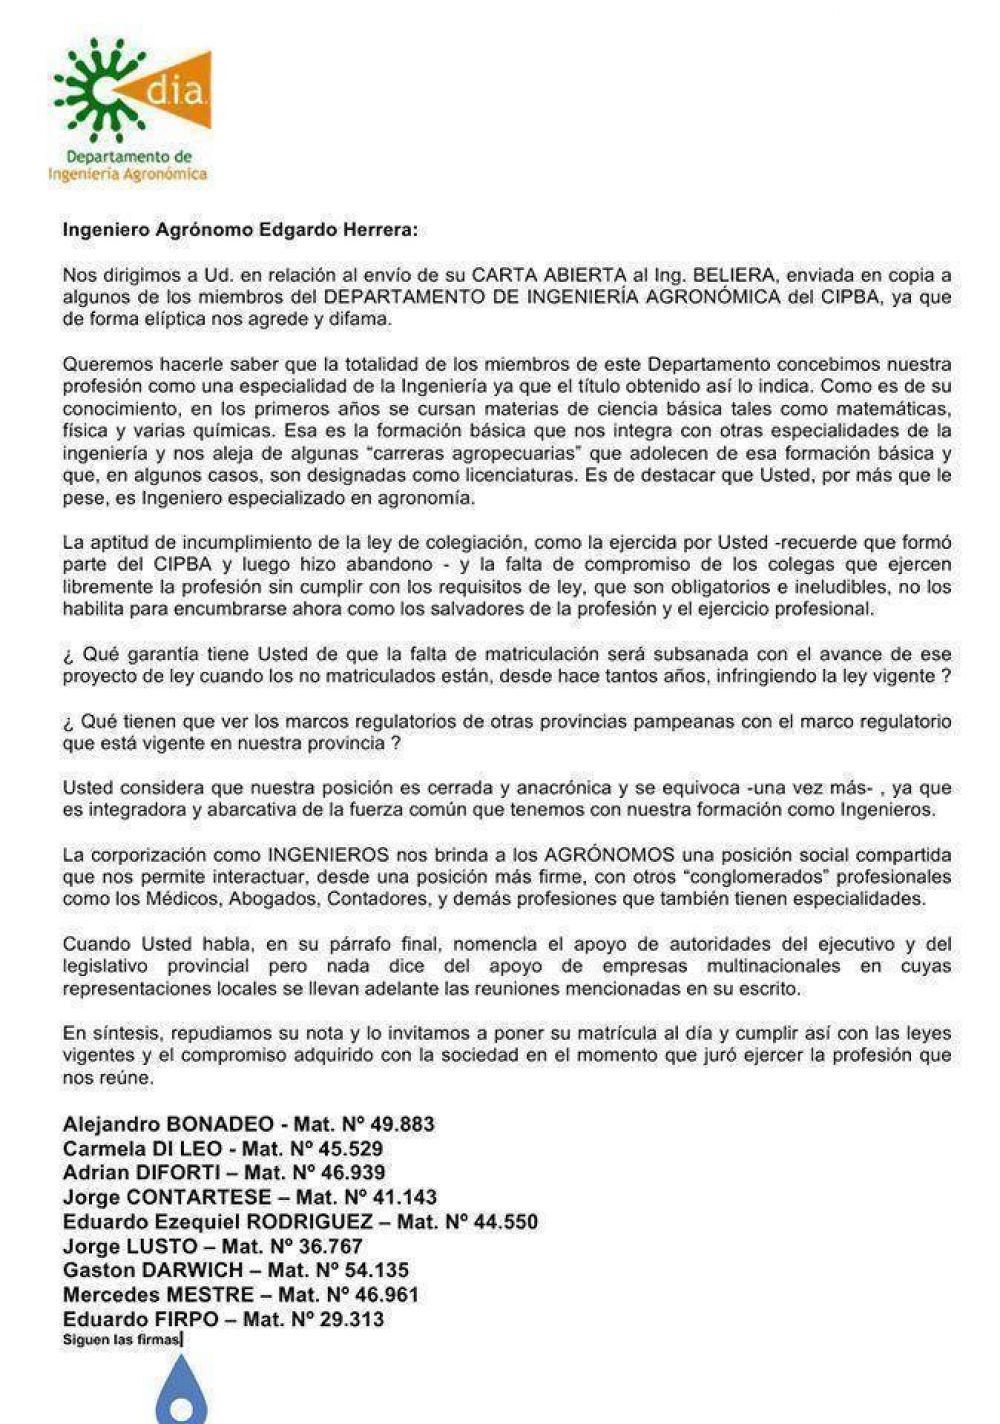 El DIA emiti un comunicado repudiando las manifestaciones del Ing. Edgardo Herrera